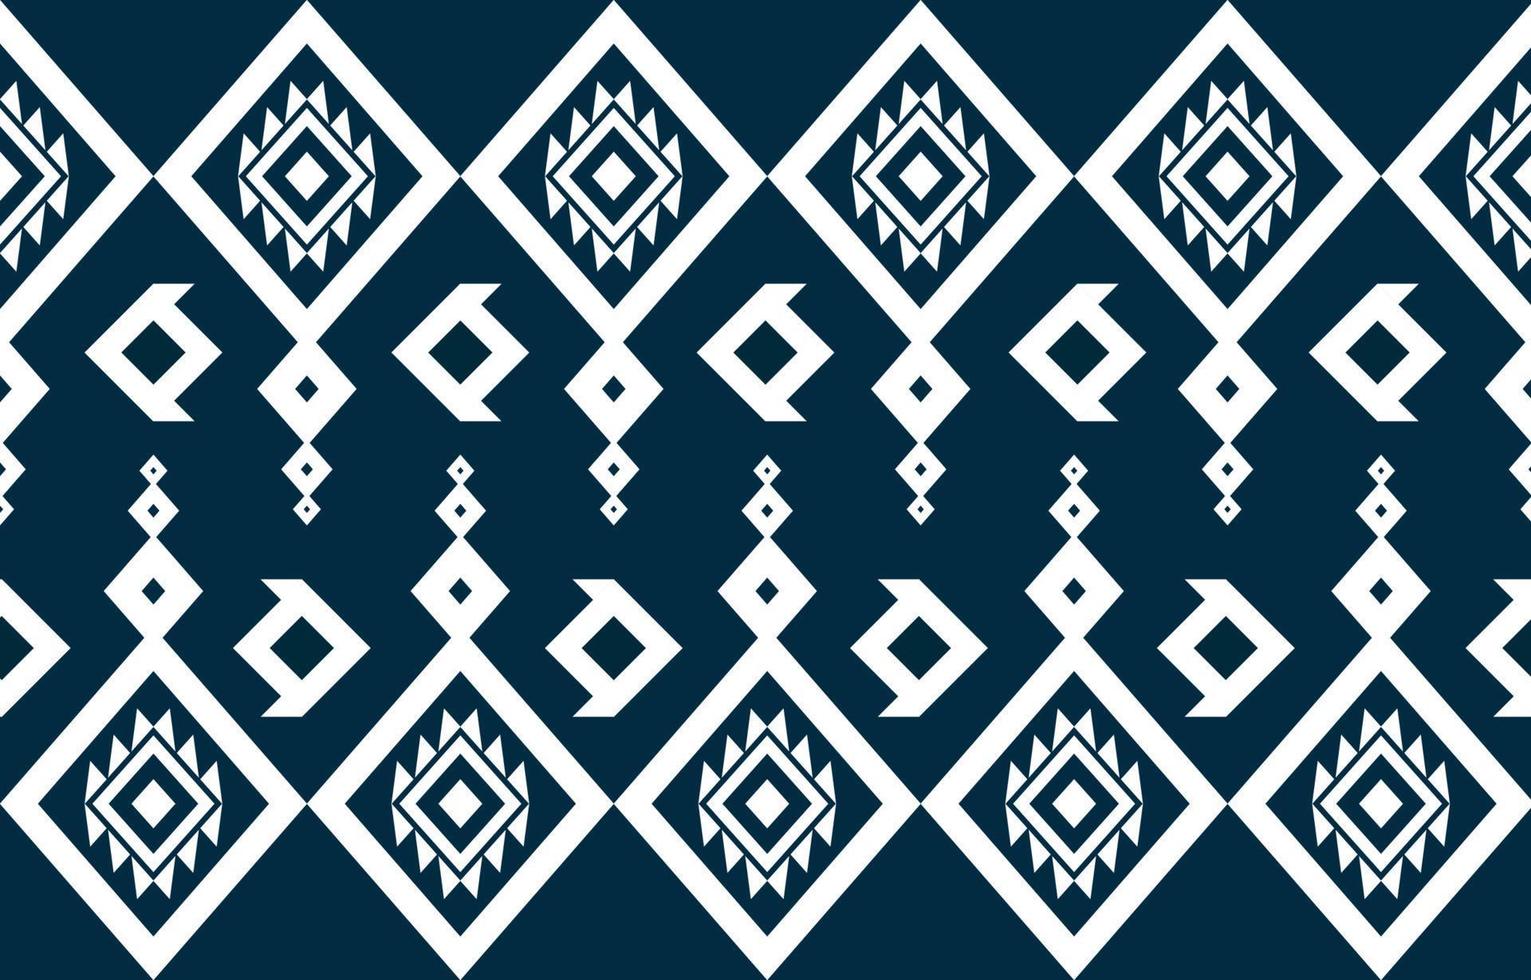 disegno geometrico etnico americano astratto blu e bianco per sfondo o carta da parati. illustrazione vettoriale del modello di tessuto